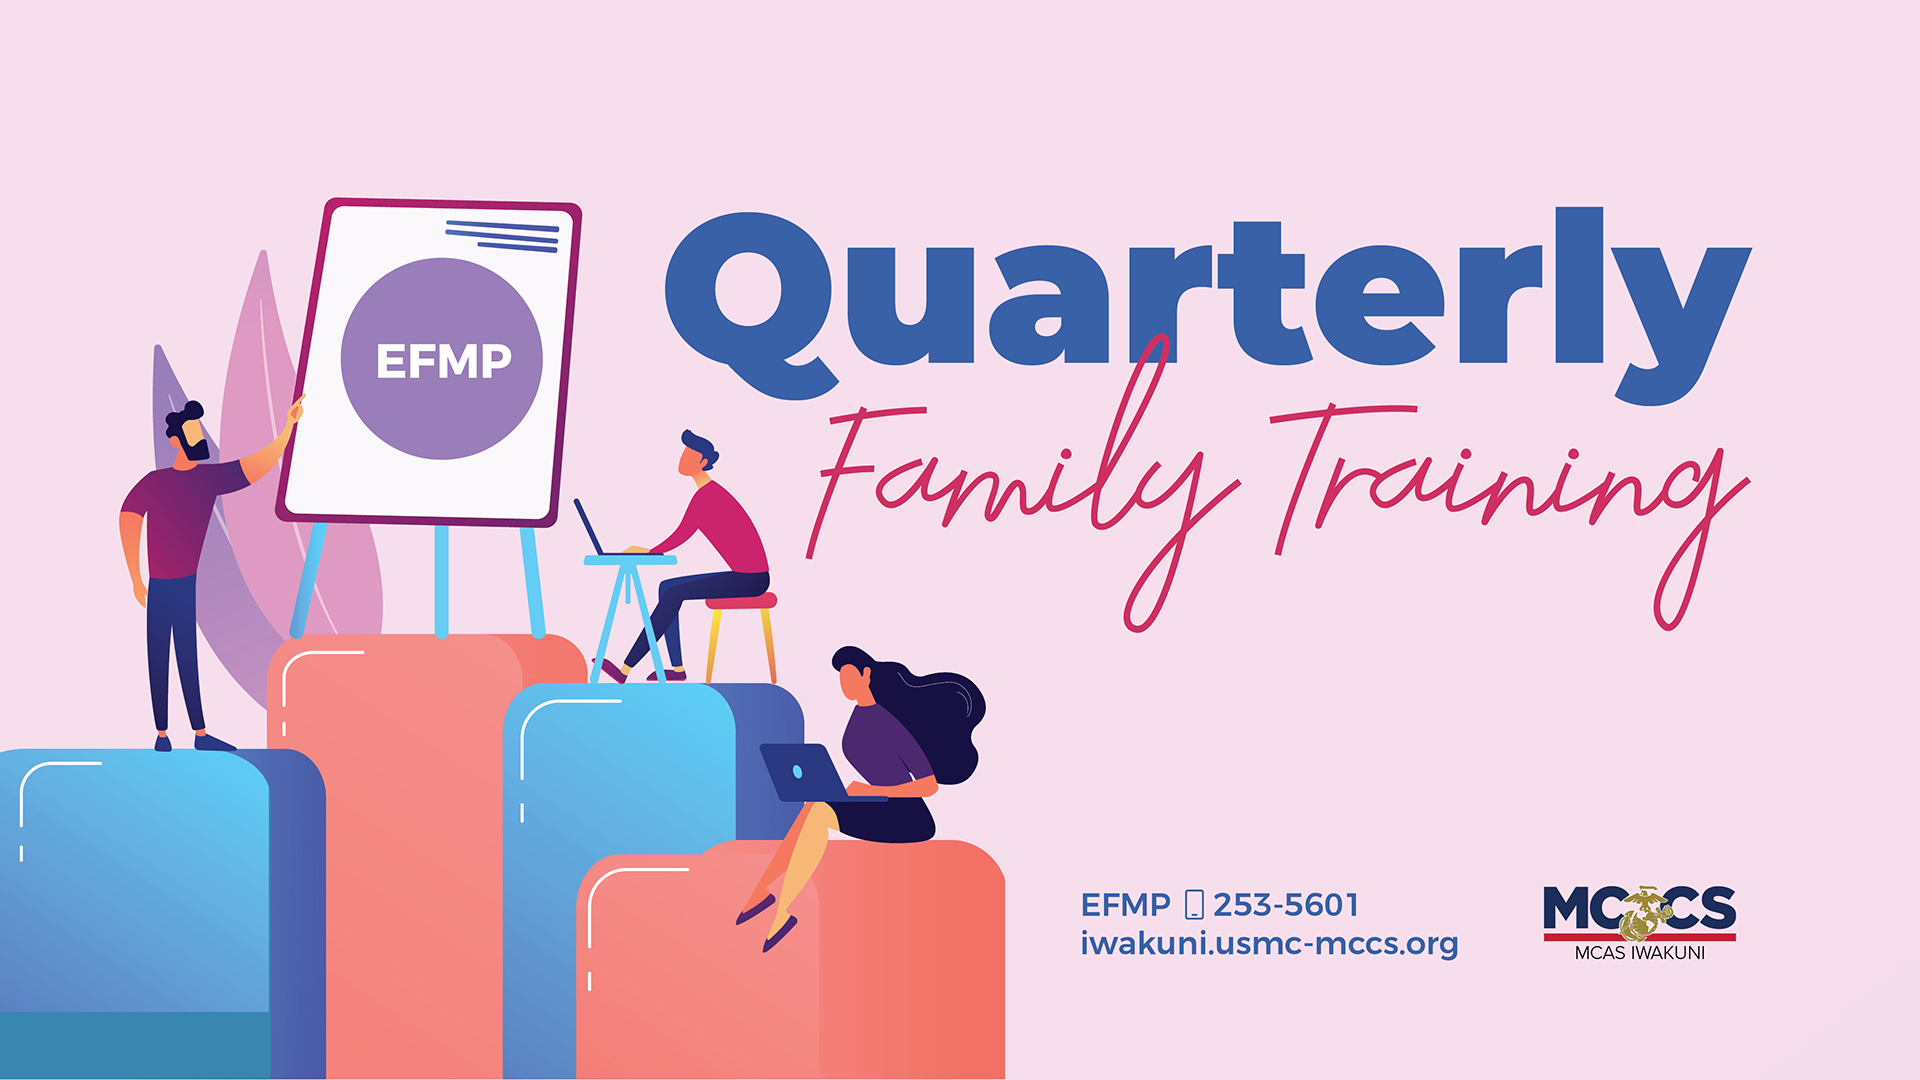 EFMP Quarterly Family Training (Evening Session)